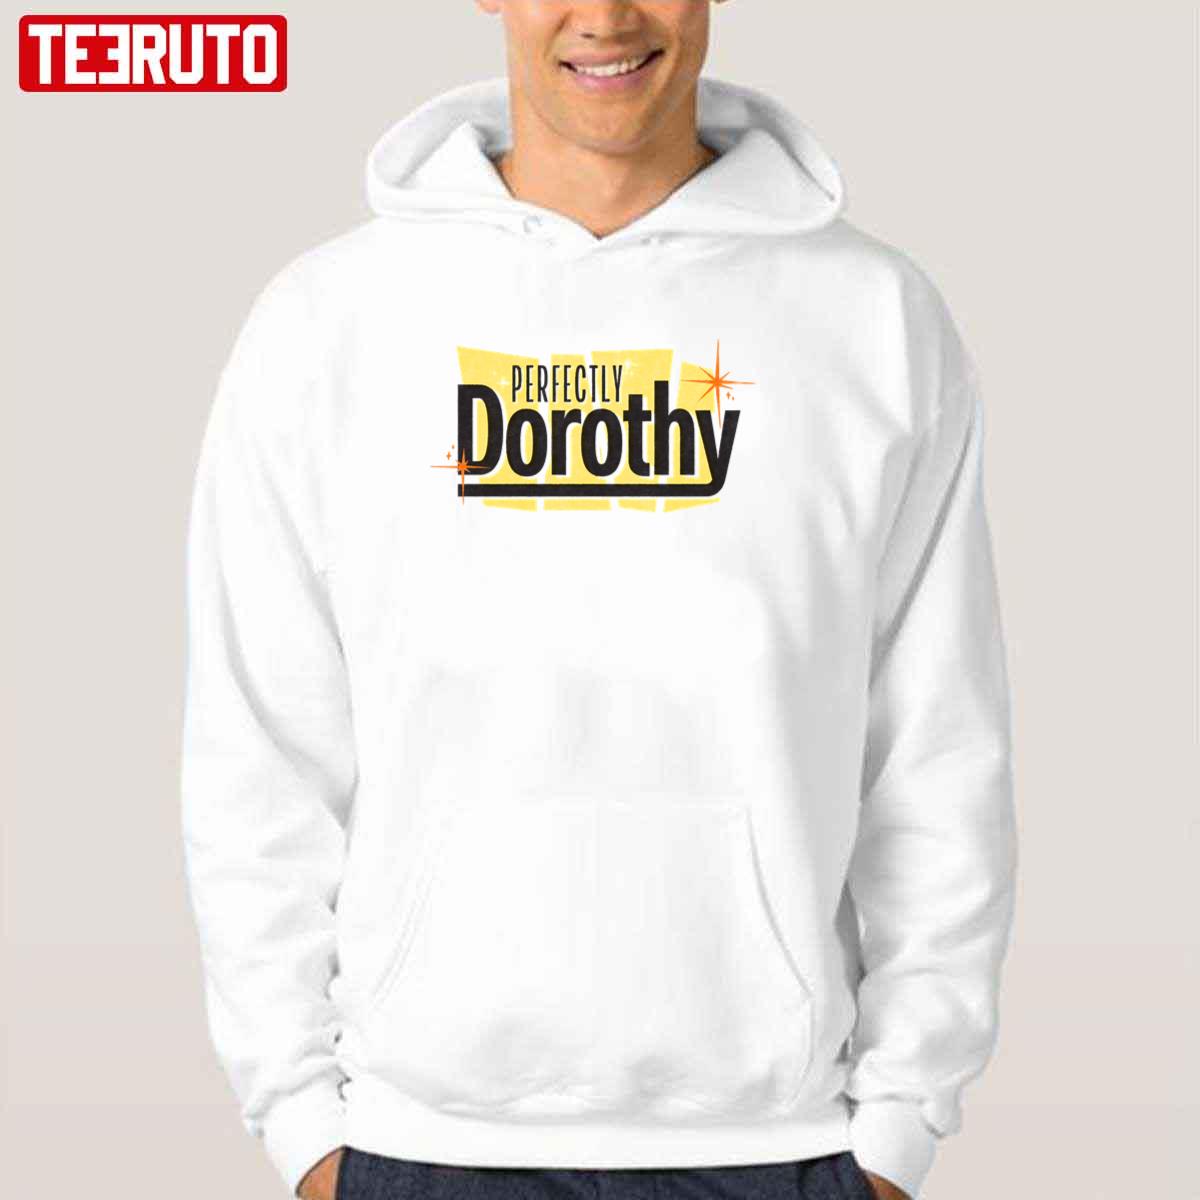 Perfectly Dorothy Unisex T-Shirt